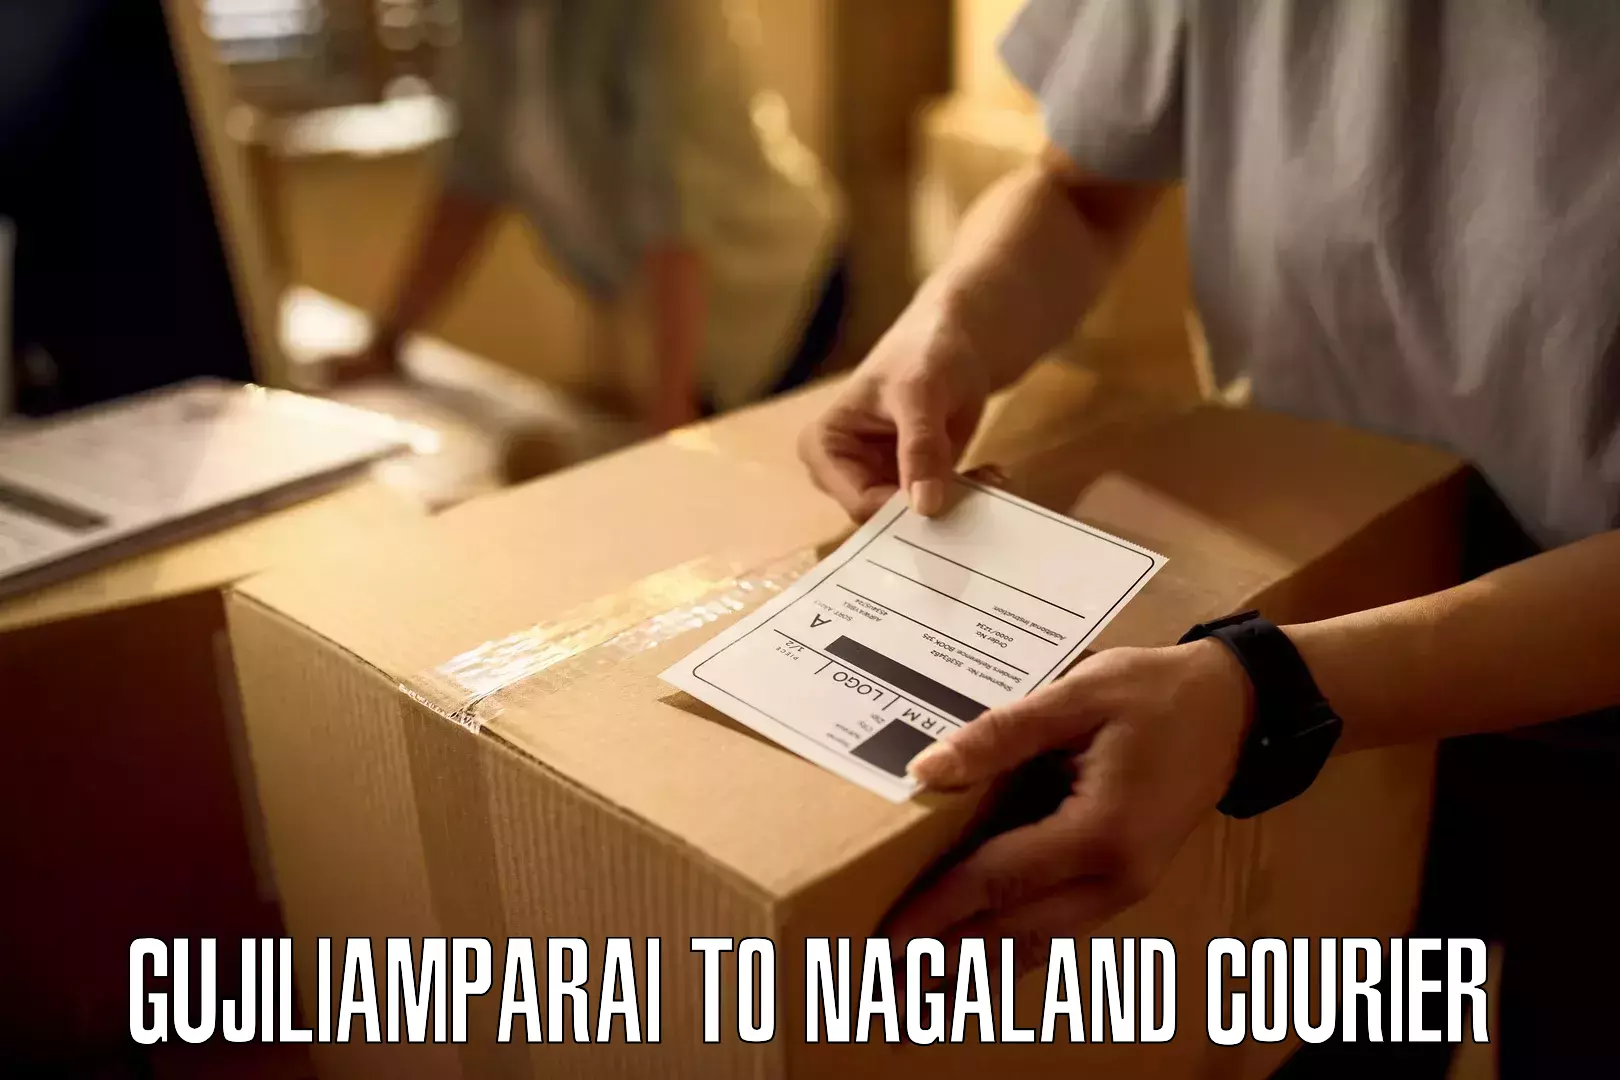 Reliable logistics providers Gujiliamparai to Peren